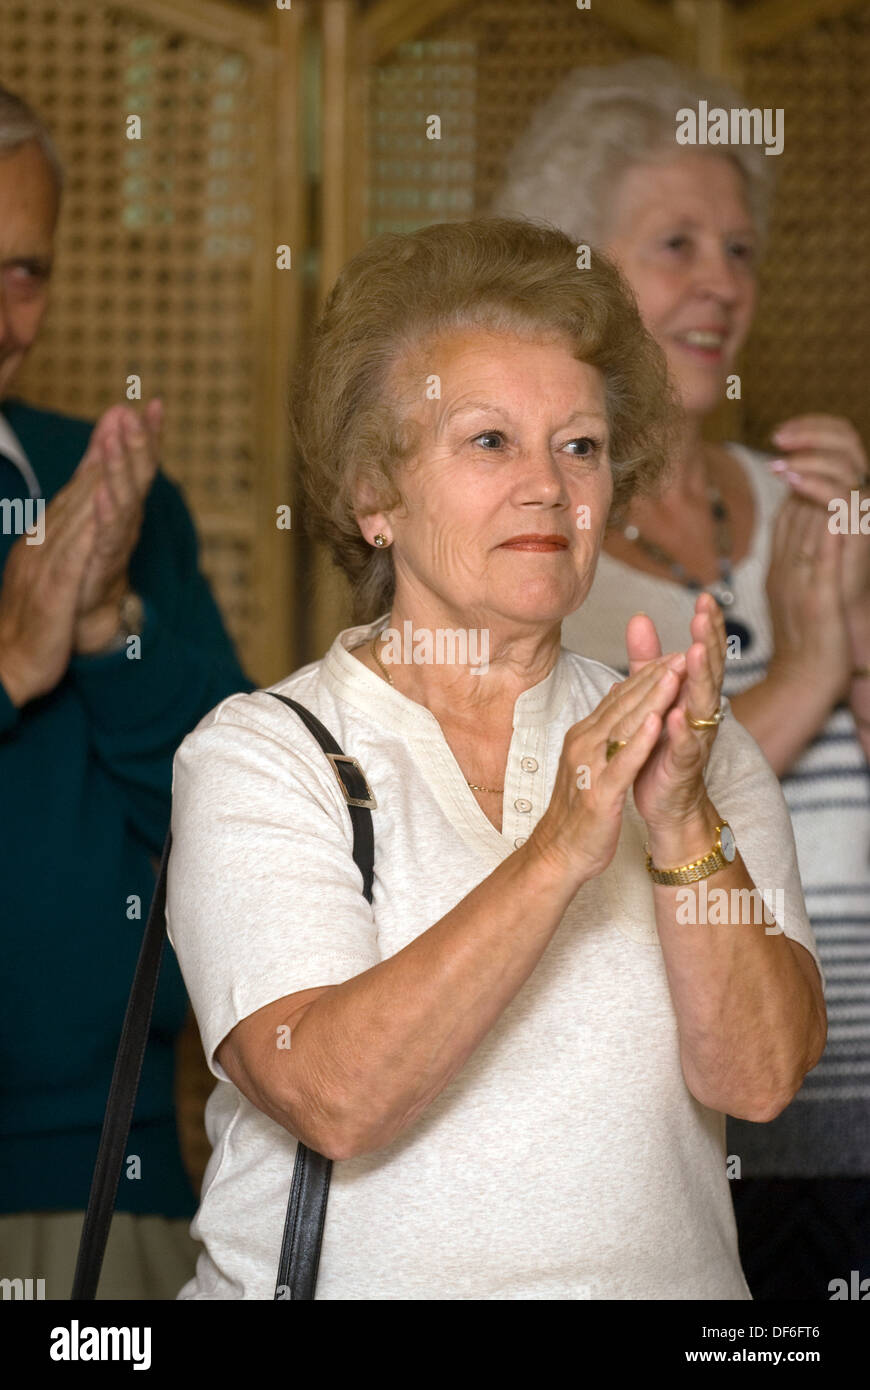 Le donne anziane che mostrano il loro apprezzamento per l'intrattenimento (coro)a macmillan cancer support mattina caffè, surrey, Regno Unito. Foto Stock